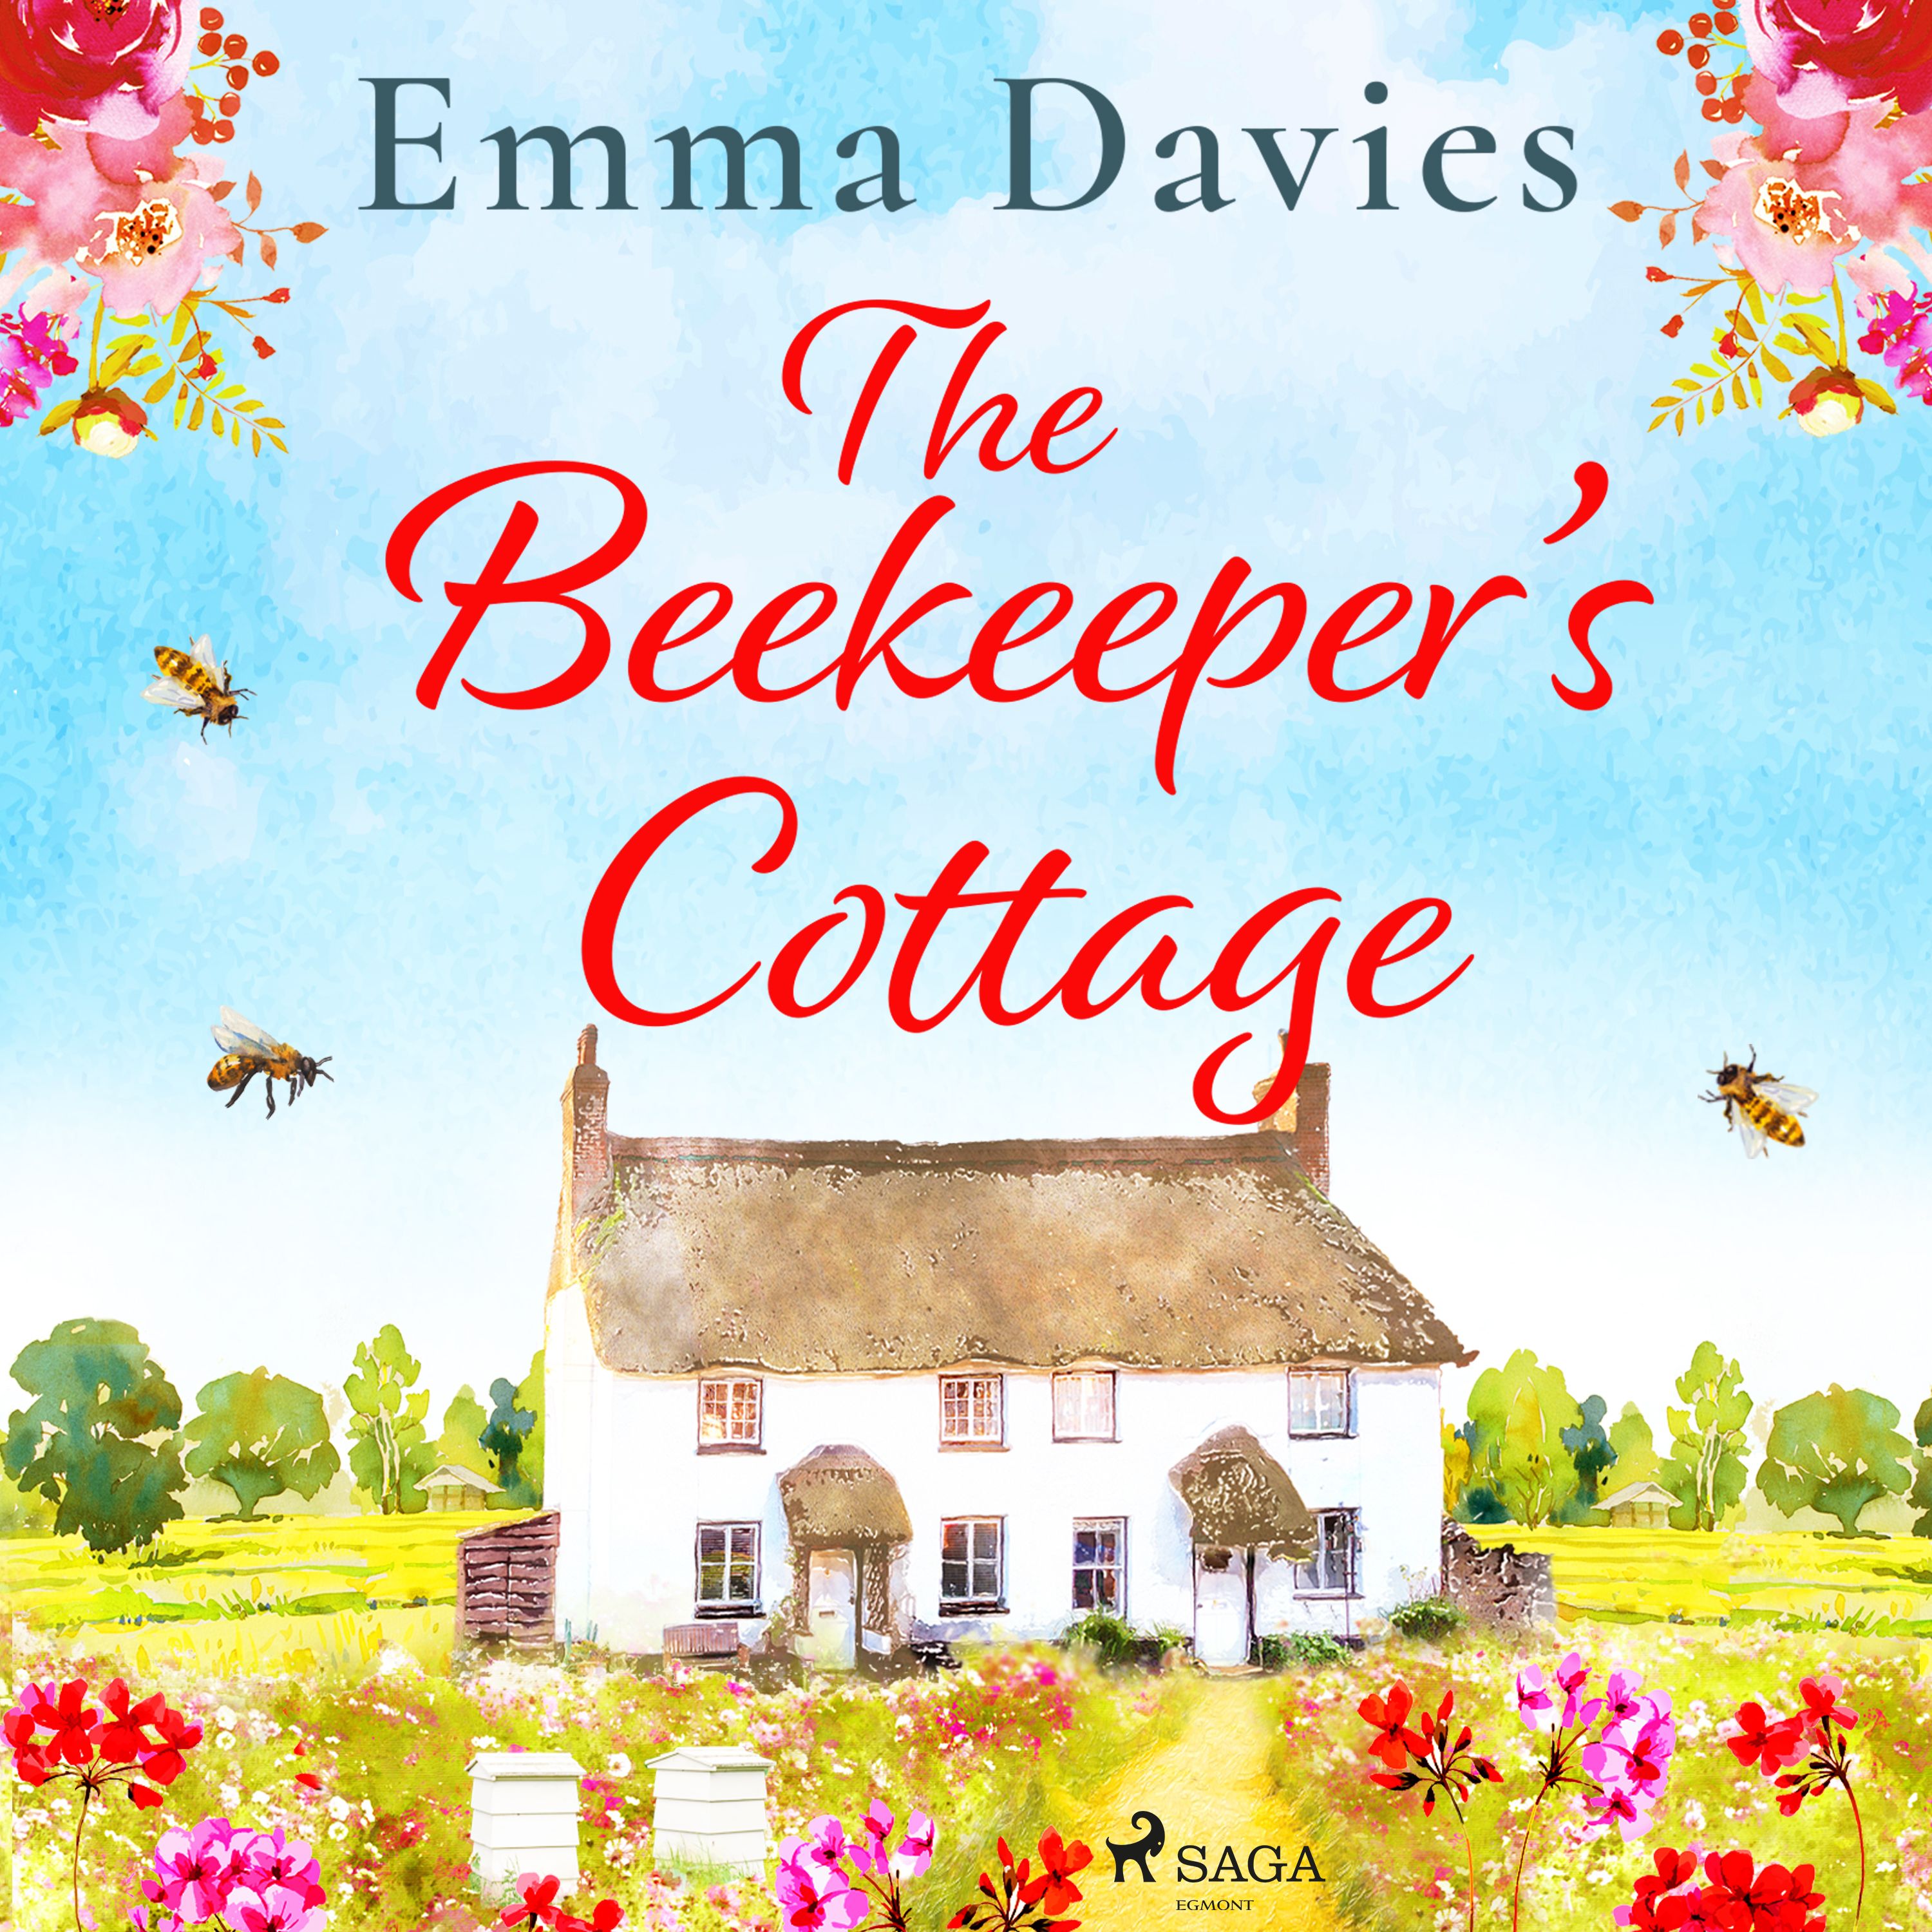 The Beekeeper's Cottage, lydbog af Emma Davies